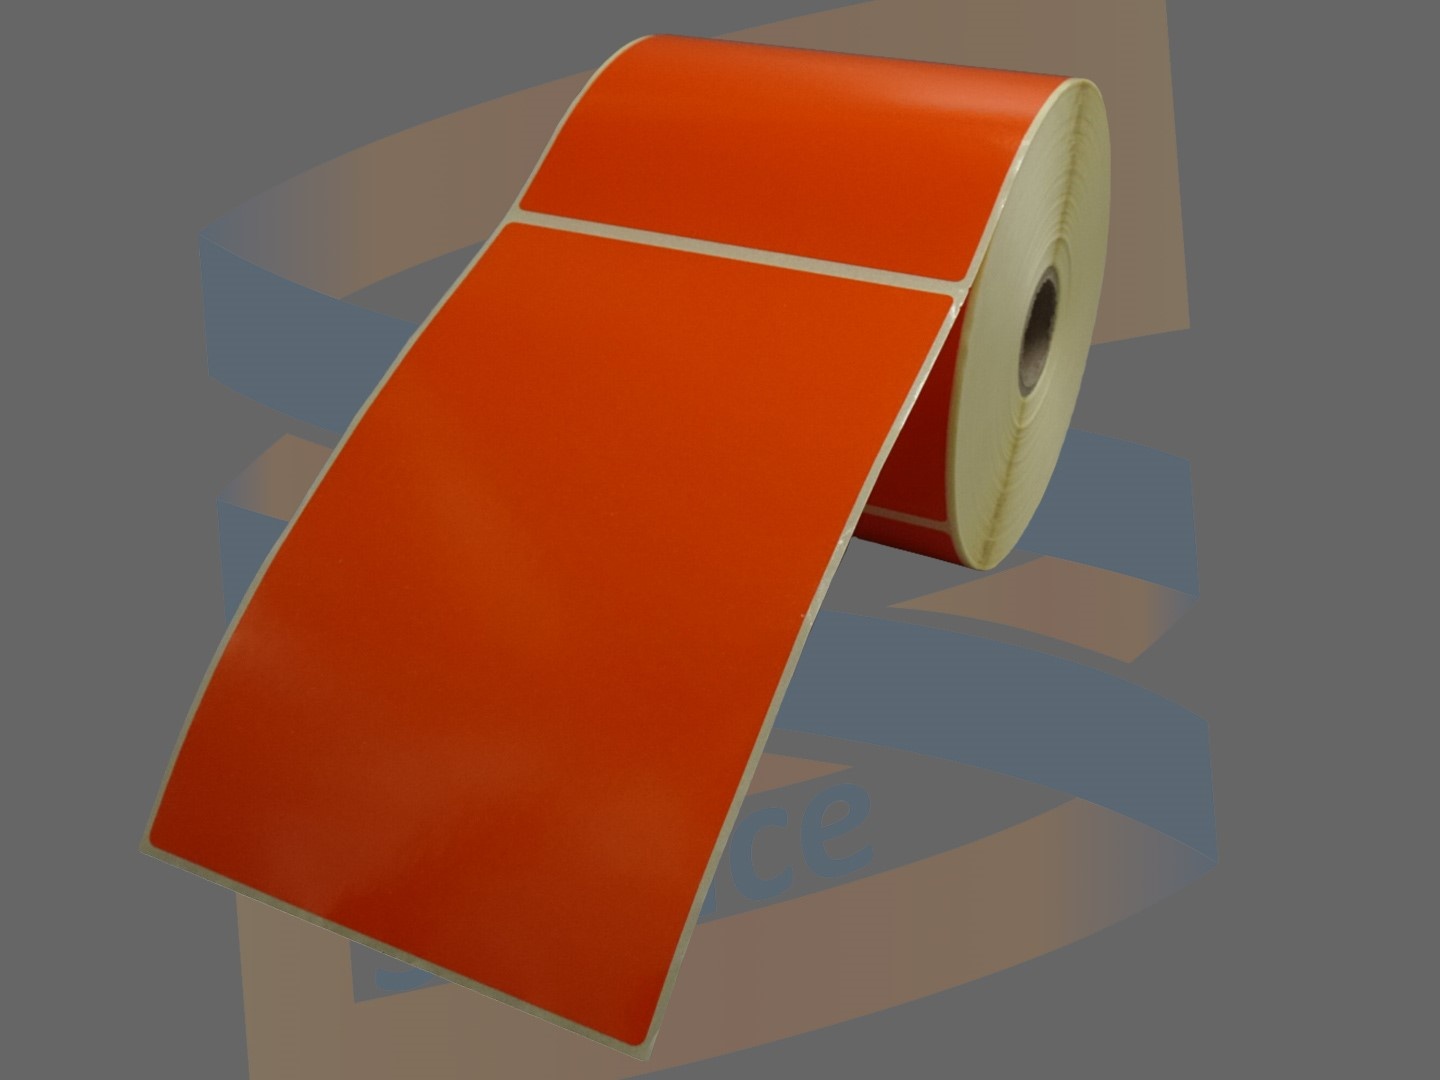 Etiket 102x152mm Oranje, direct thermal voor Citizen met een perforatie tussen ieder etiket, rol à 475 etiketten